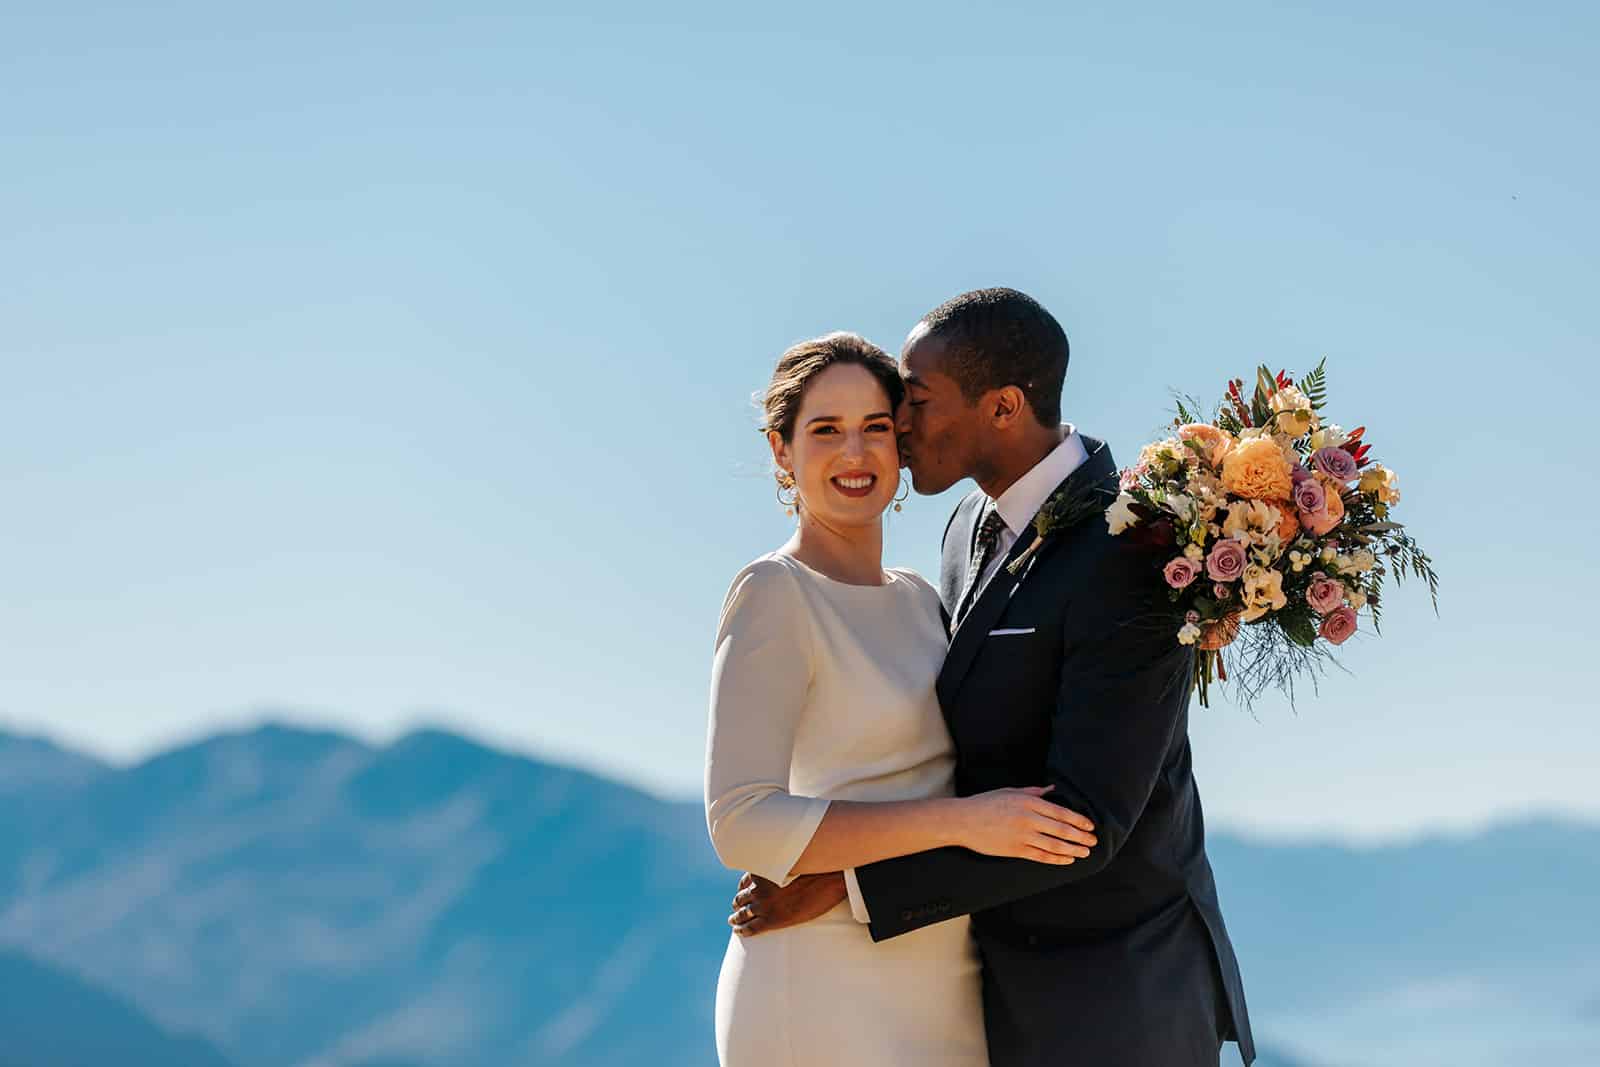 Wanaka Heli Wedding on Coromandel Peak and Isobel Glacier